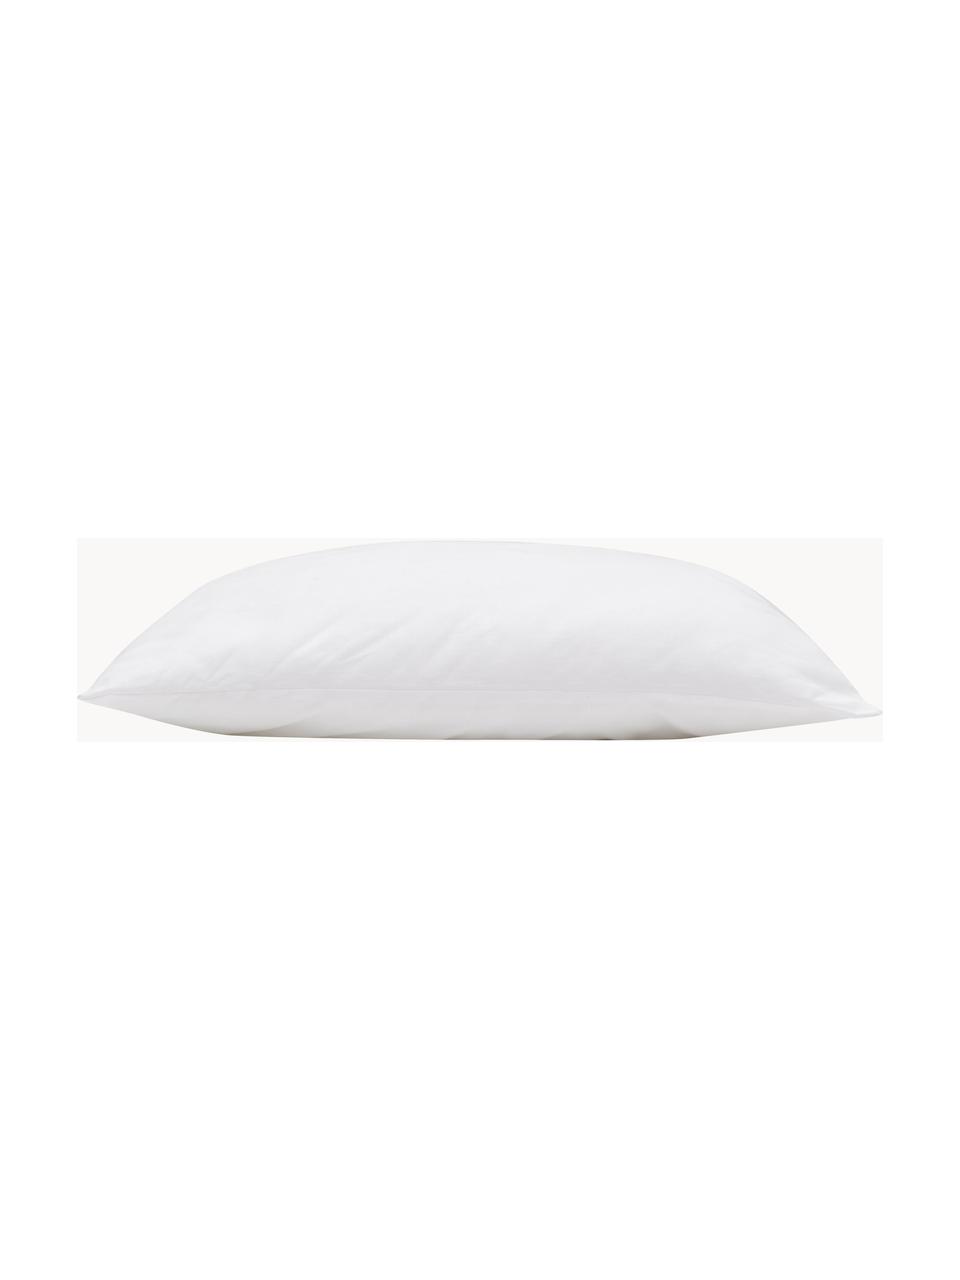 Wkład do poduszki z mikrofibry Sia, 50x50, Biały, S 50 x D 50 cm